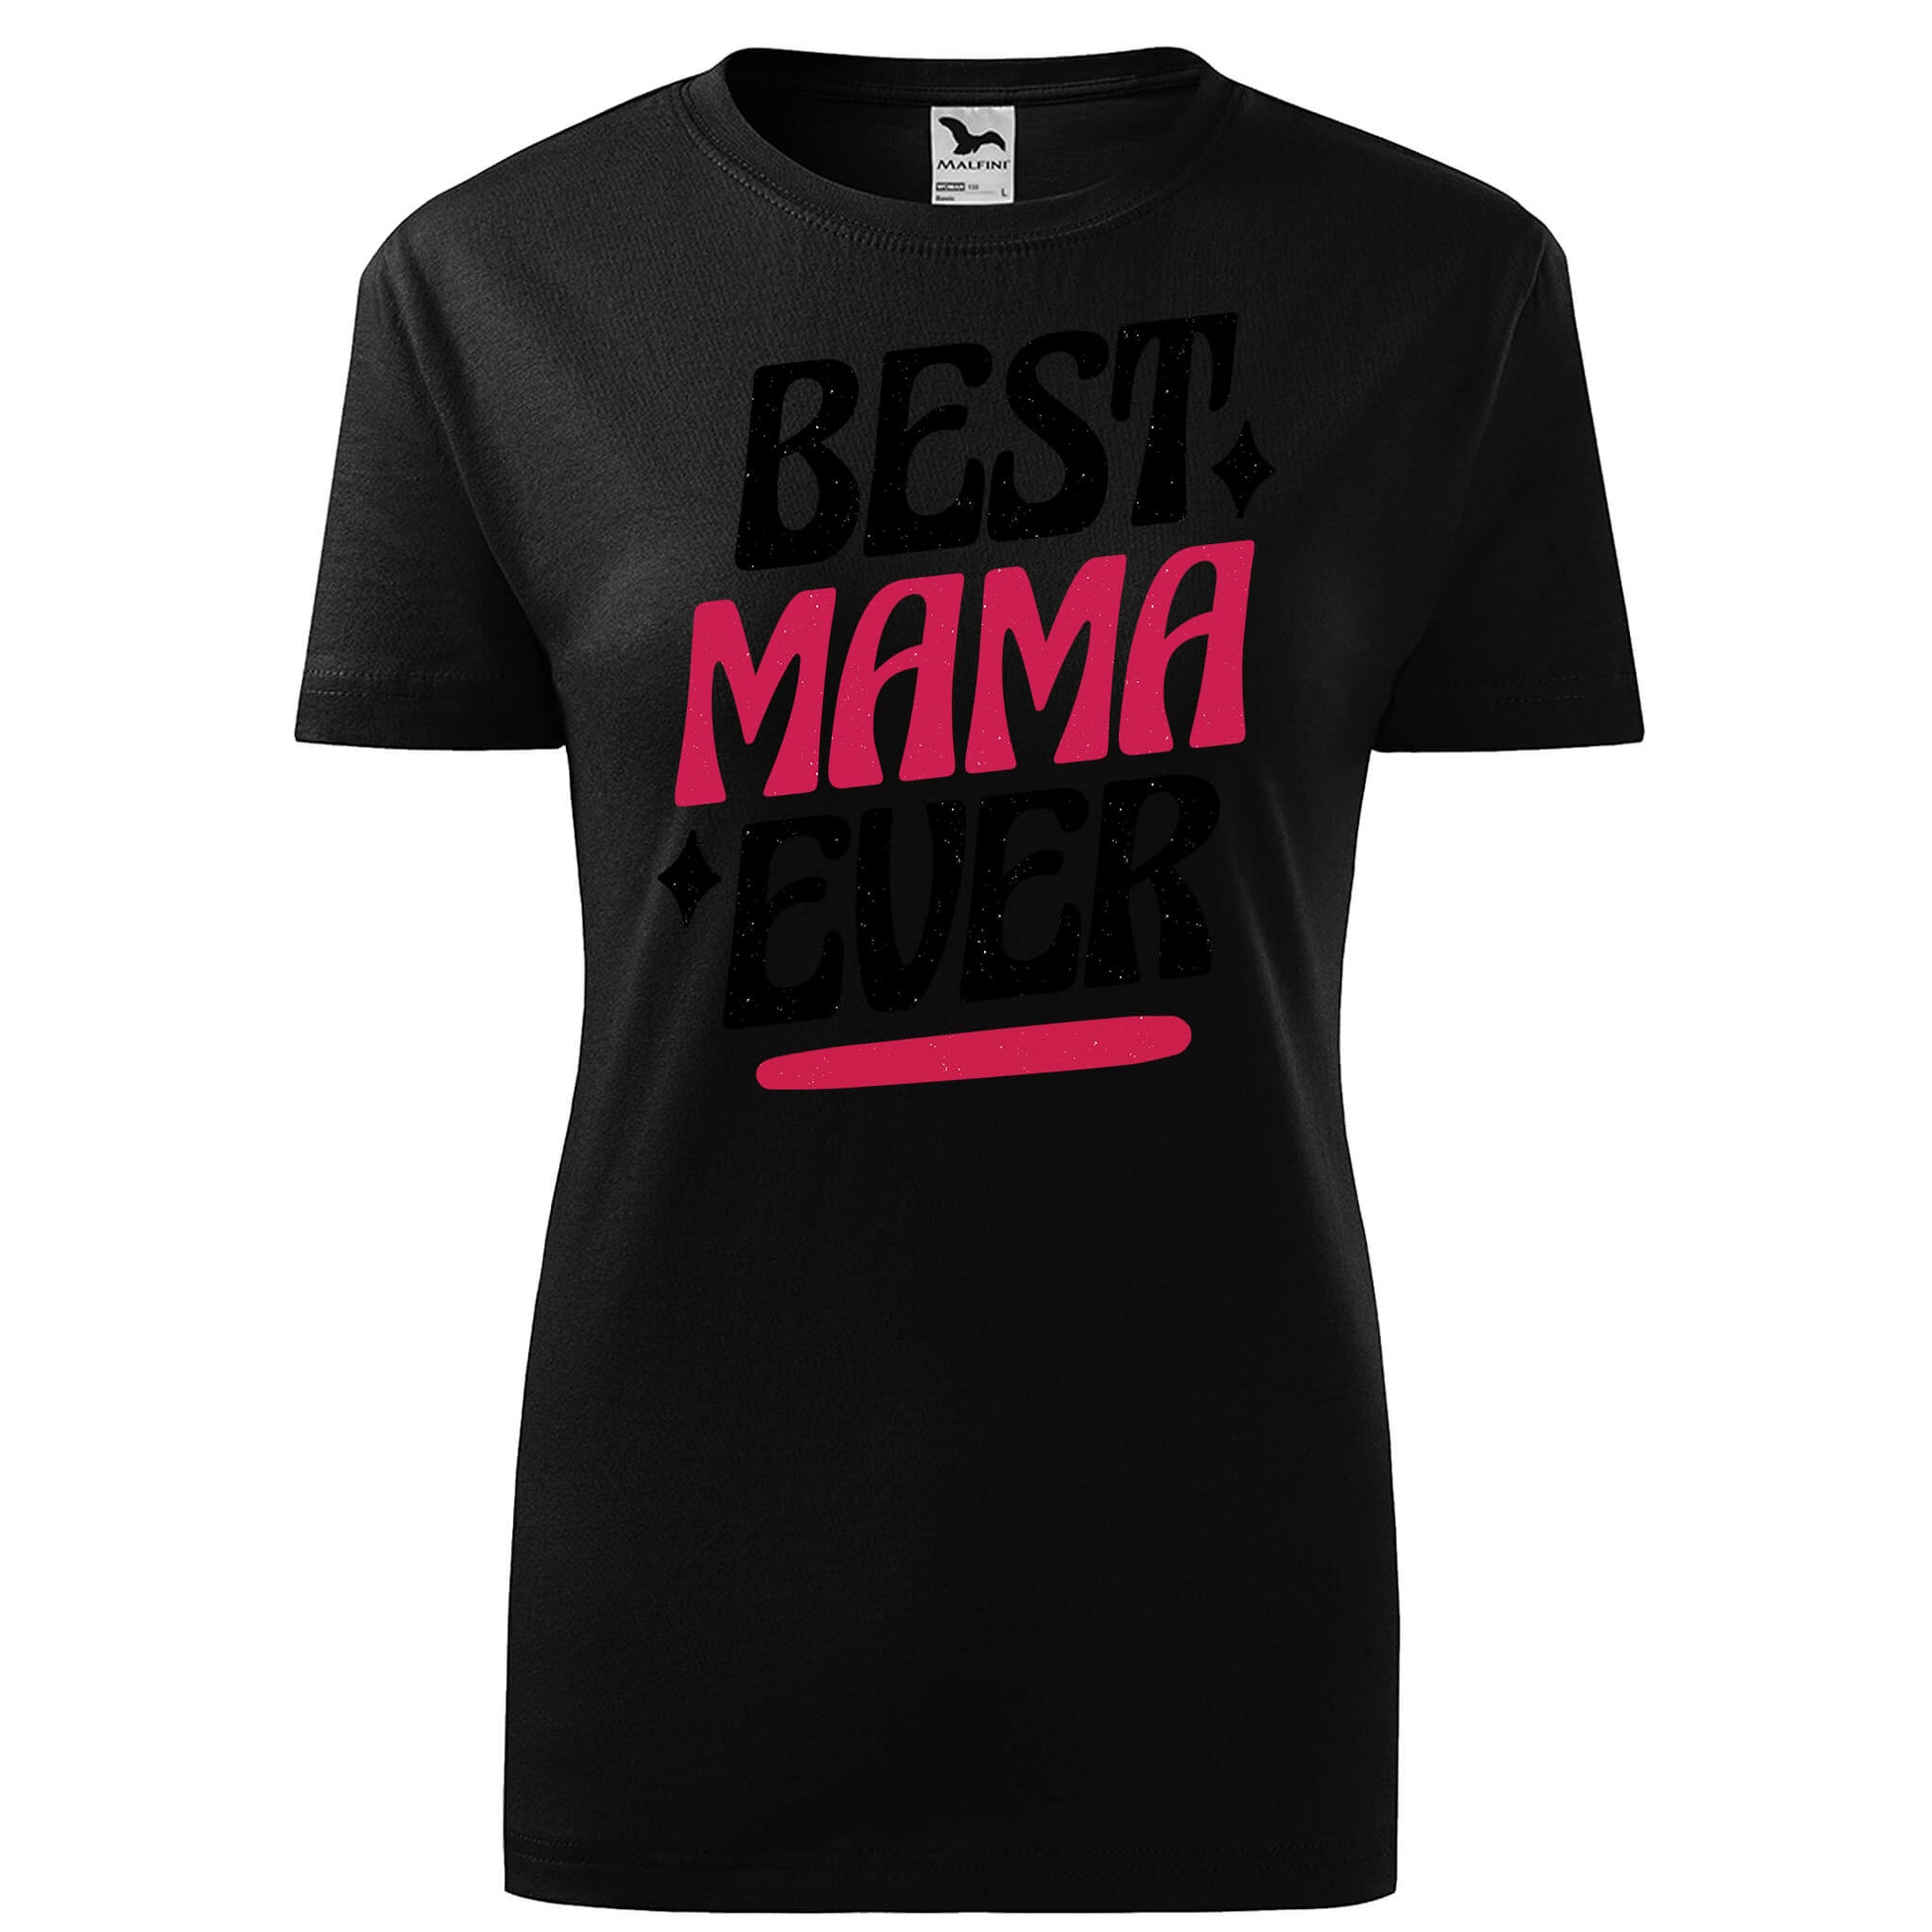 Best mama ever t-shirt - rvdesignprint